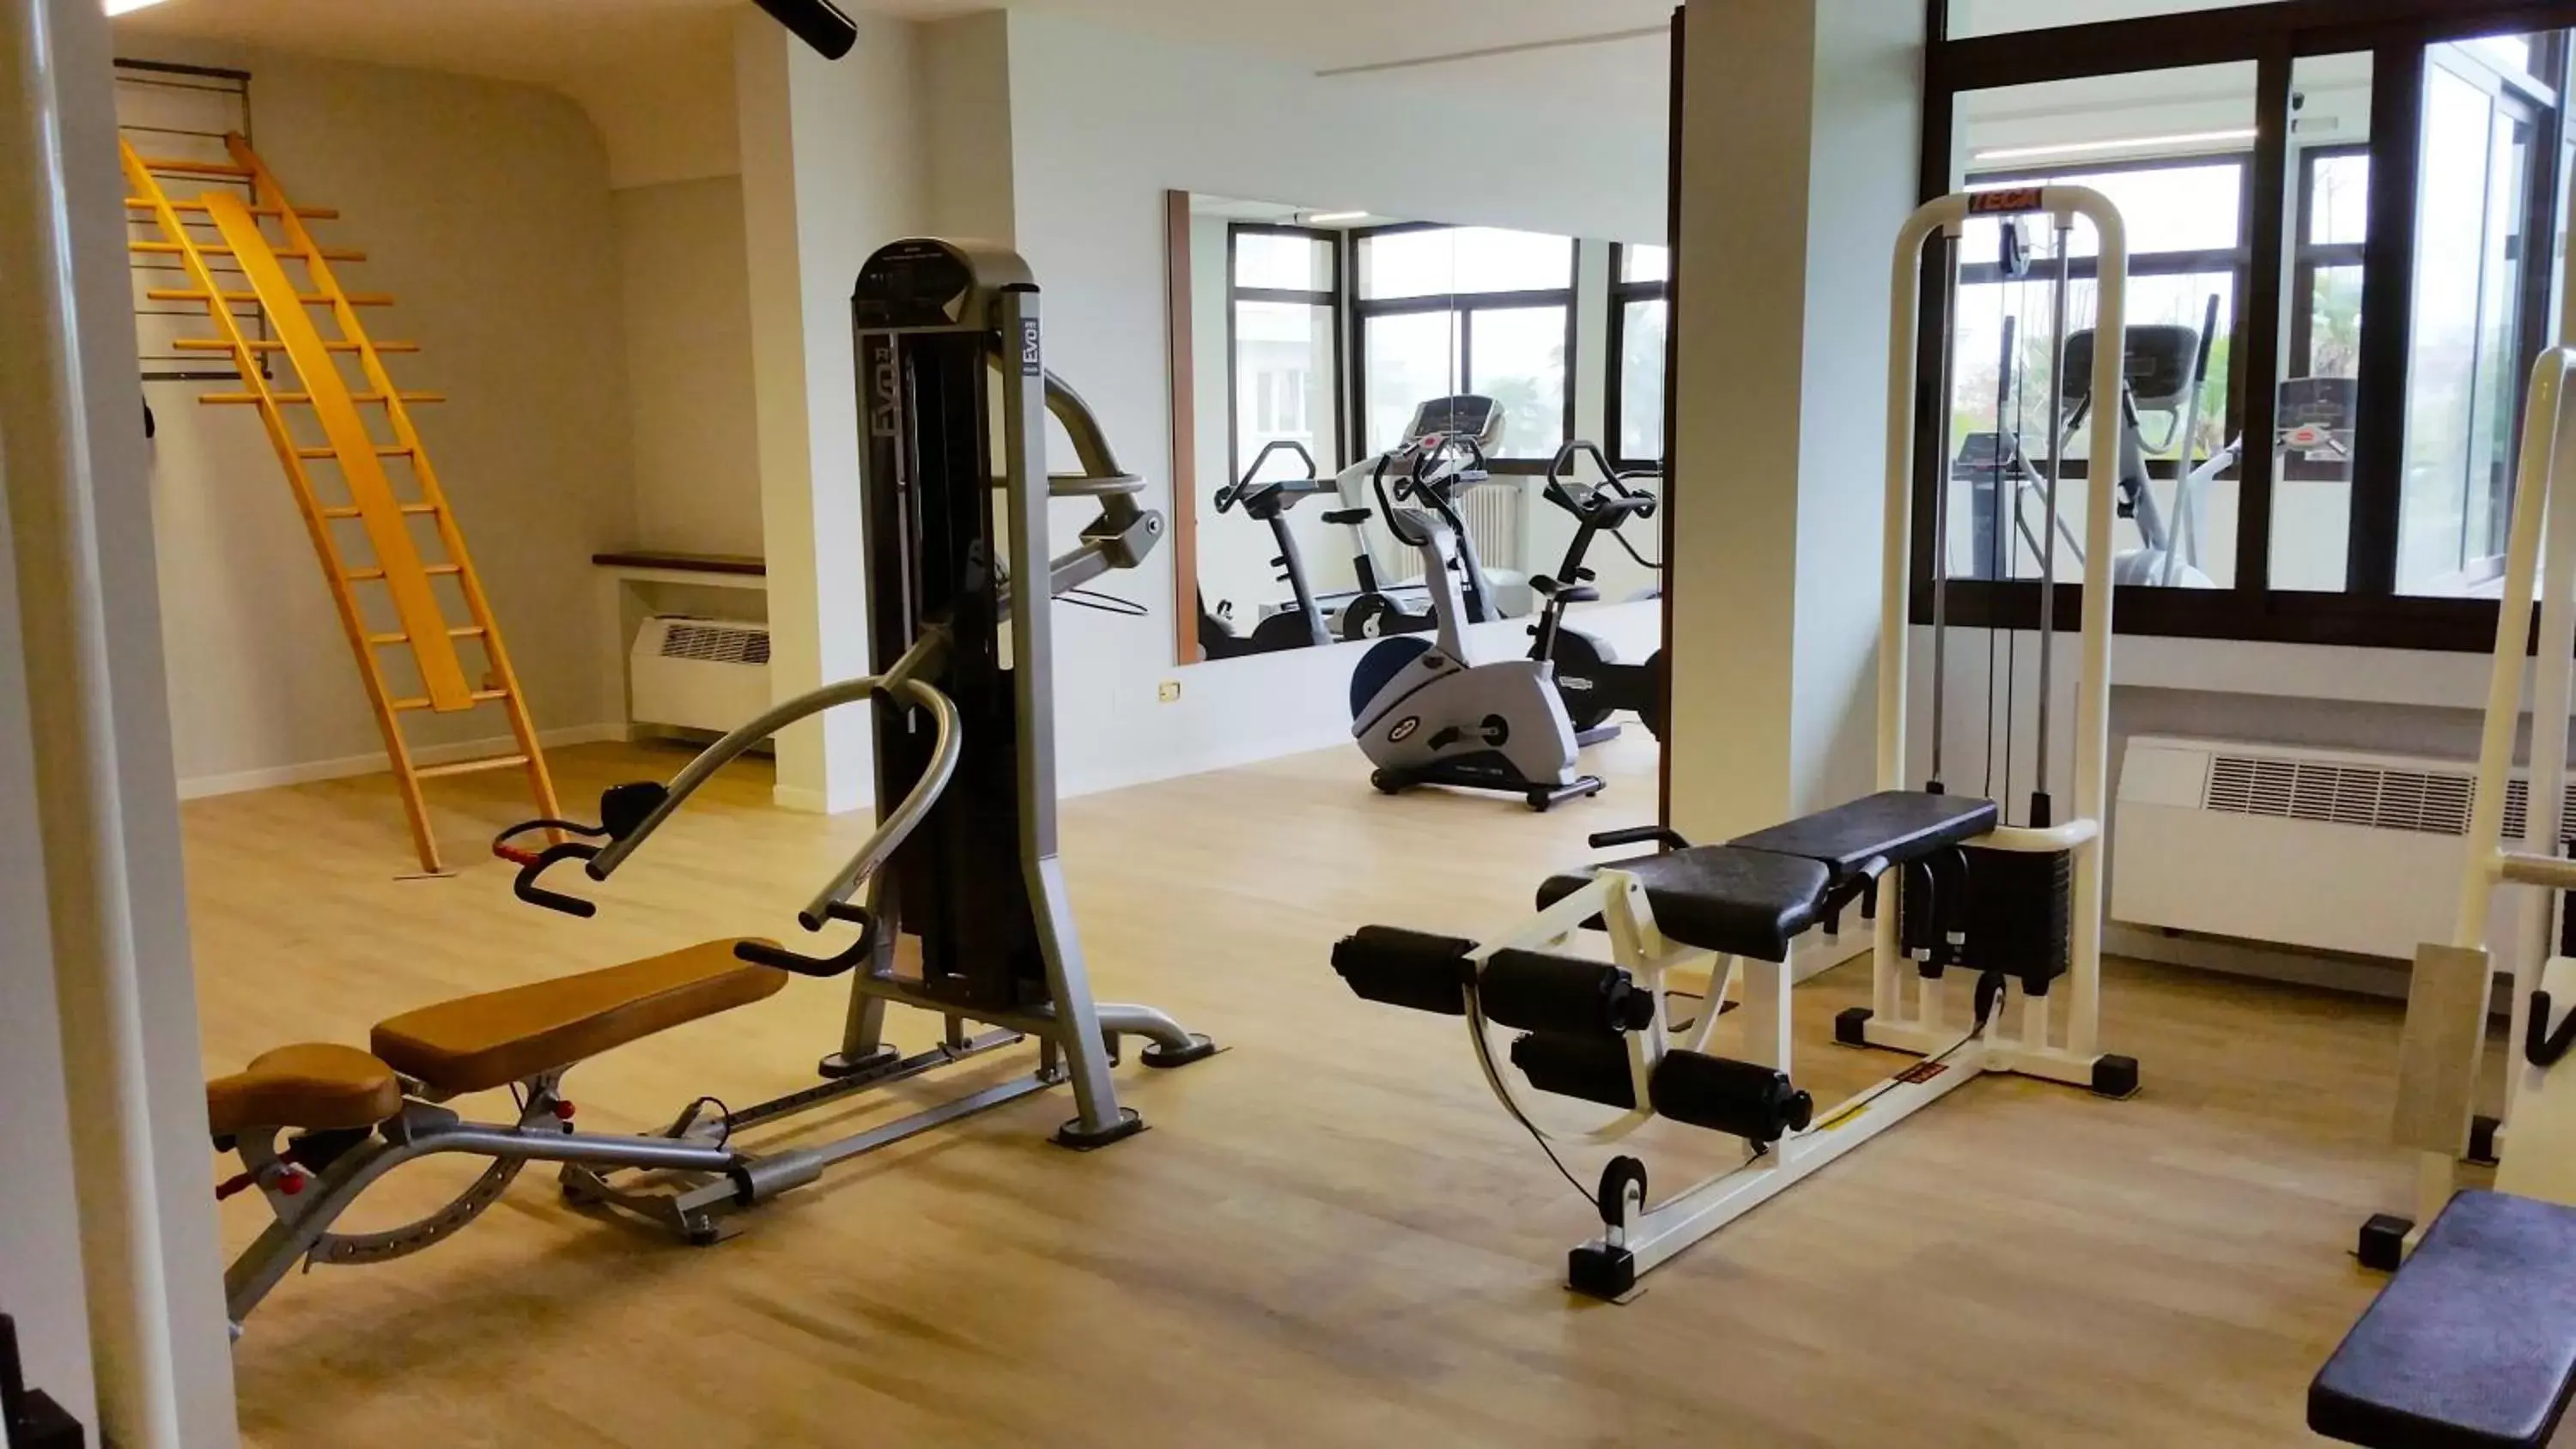 Fitness centre/facilities in Grand Hotel Trieste & Victoria